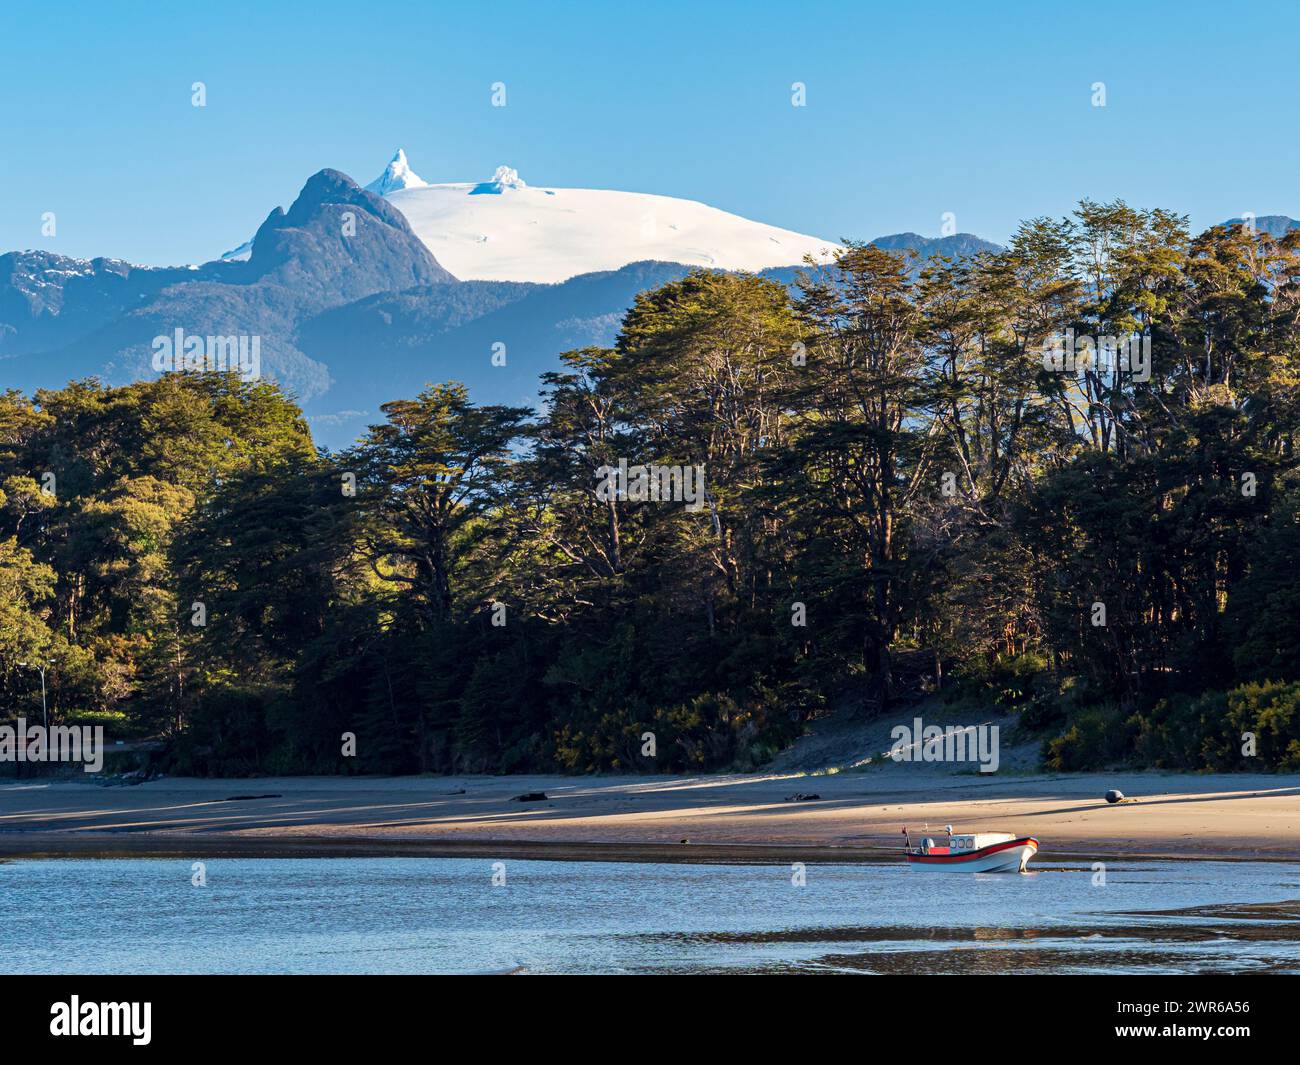 Spiaggia a Raul Marin Balmaceda, vulcano innevato Corcovado nella parte posteriore, Patagonia, Cile Foto Stock